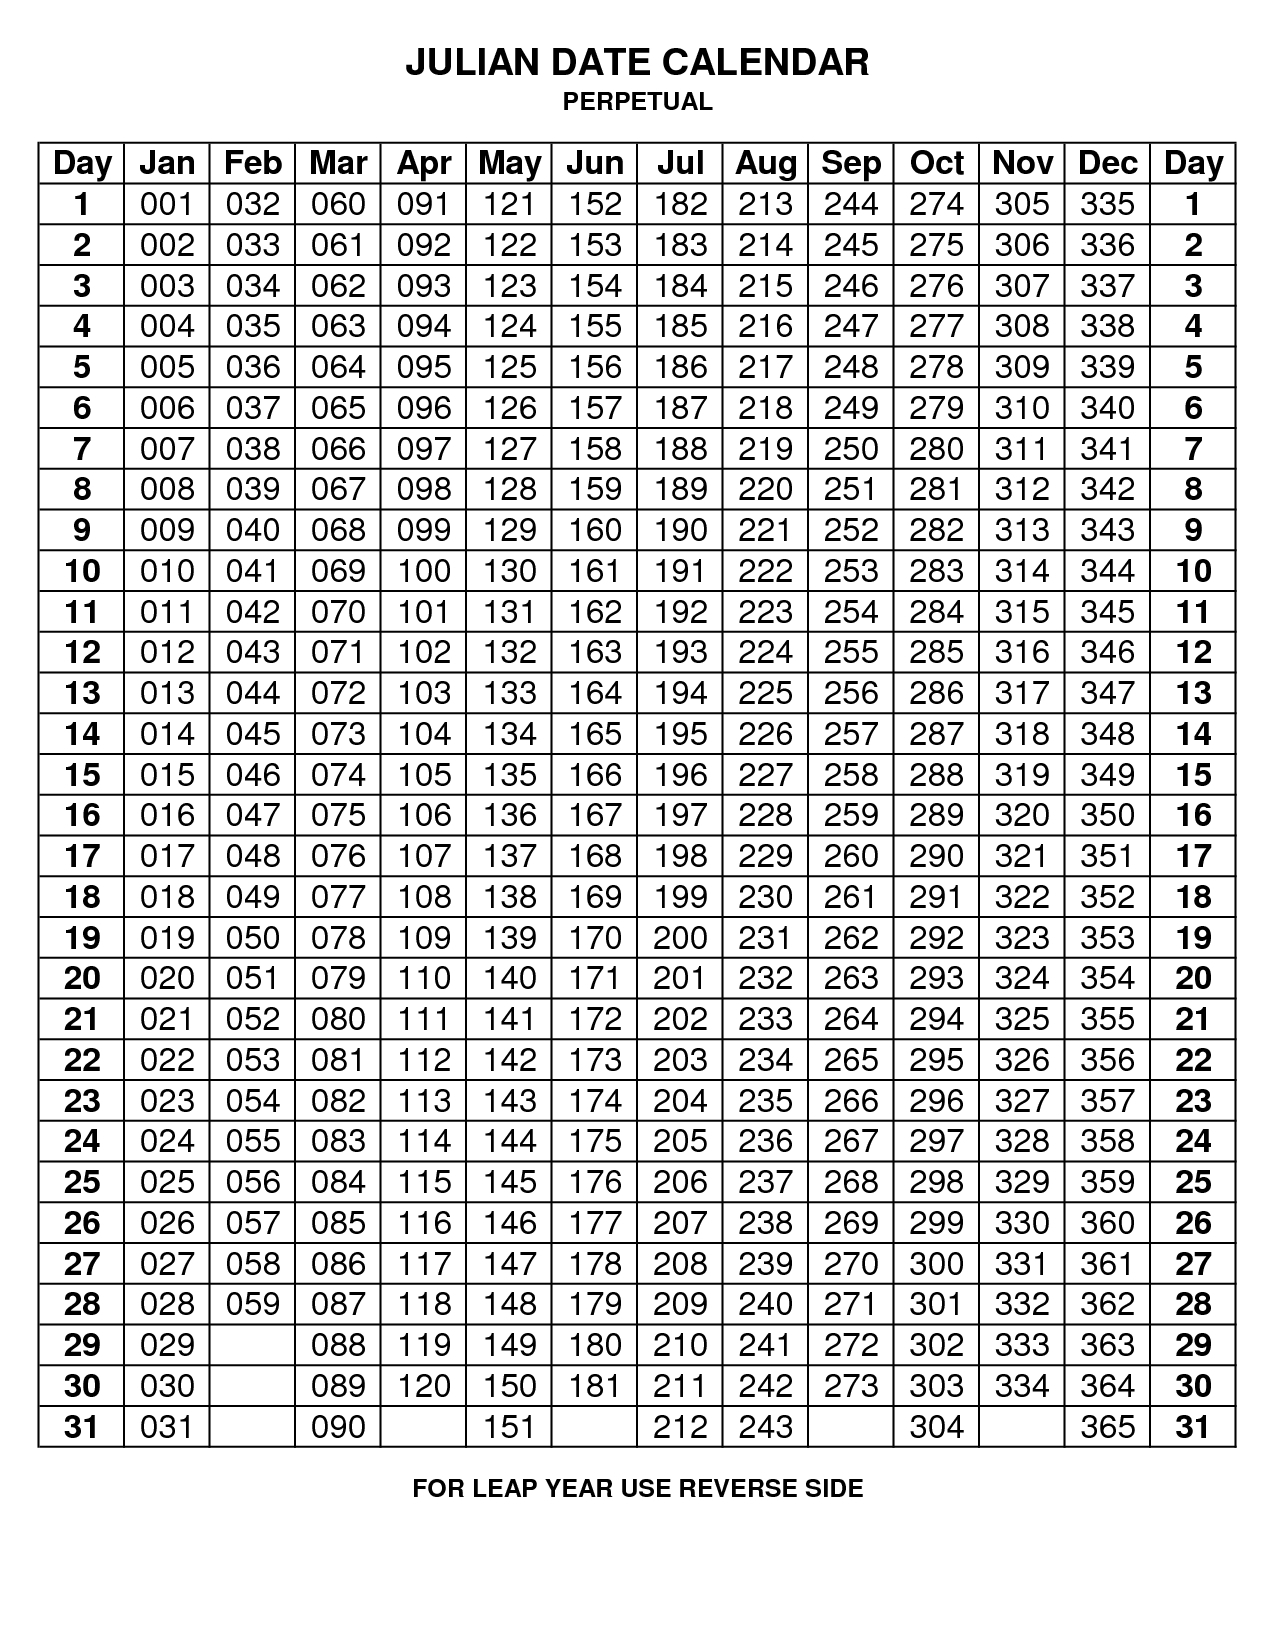 Julian Date Calendar 2020 | Calendar For Planning with regard to Quadax Julian Calendar 2018